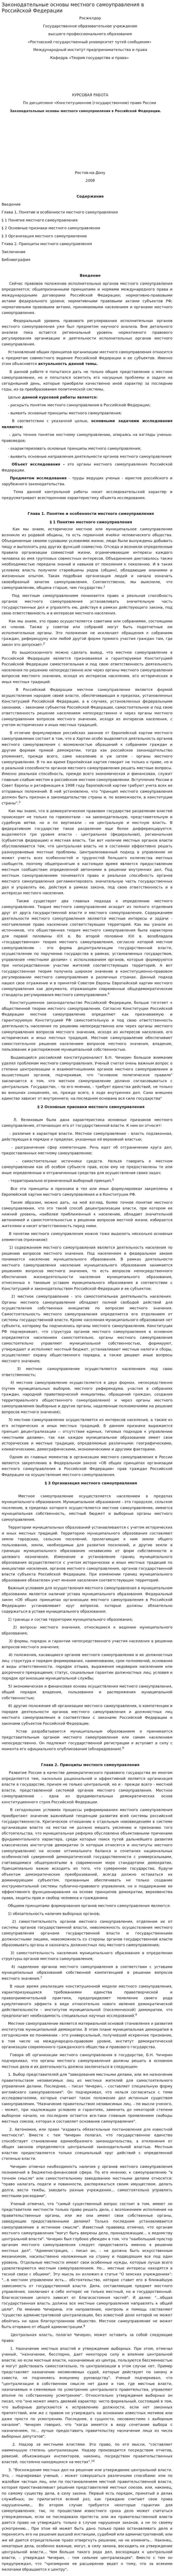 Законодательные основы местного самоуправления в Российской Федерации